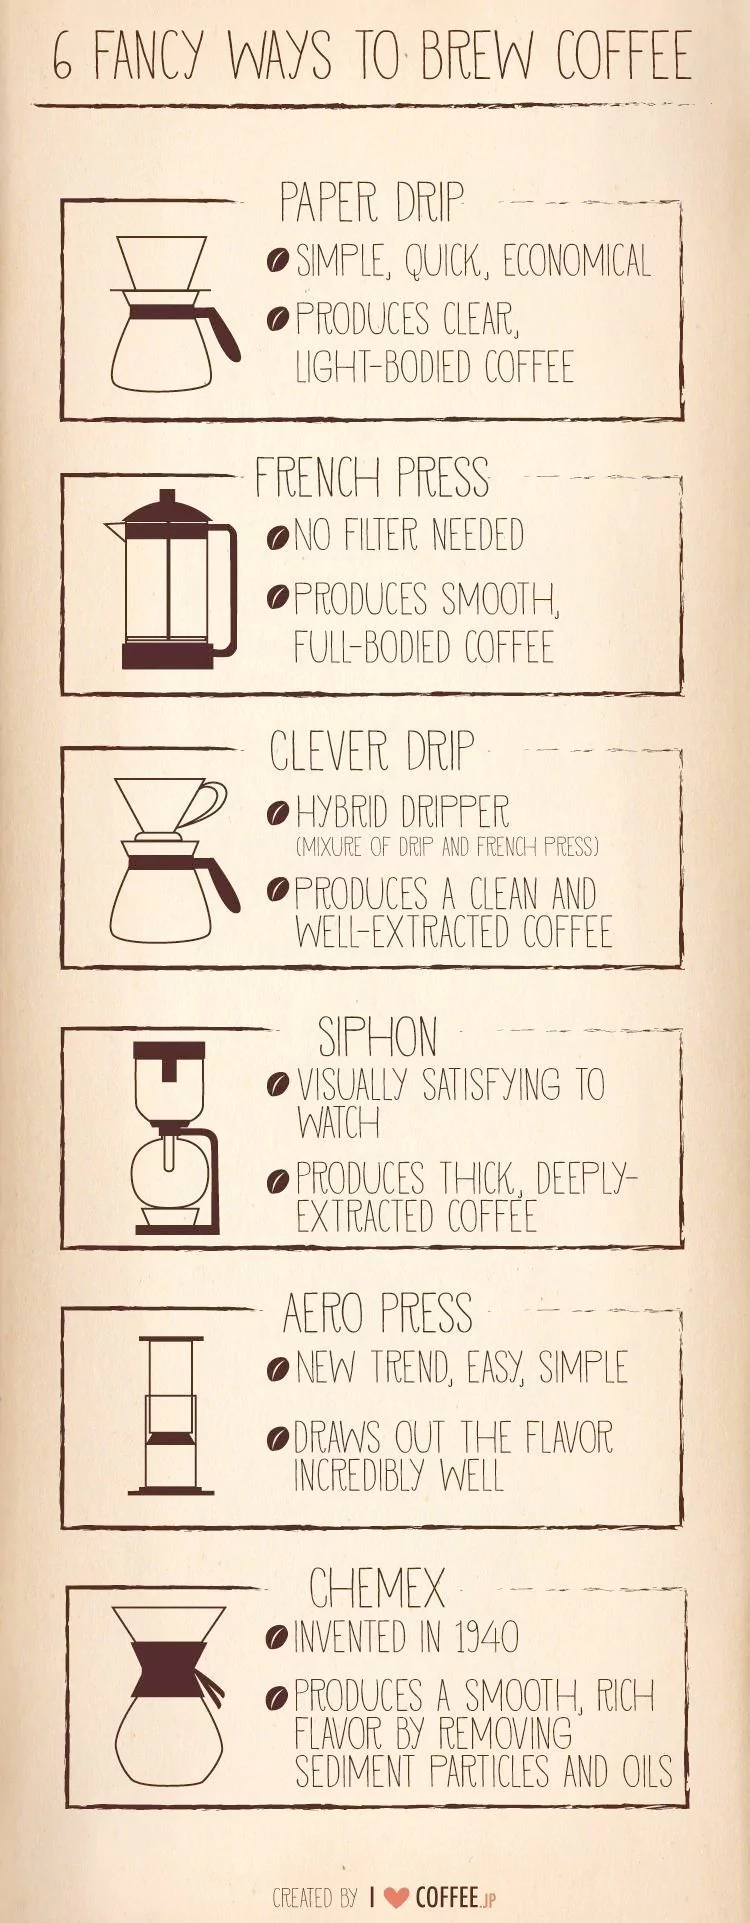 6 Fancy Ways To Brew Coffee